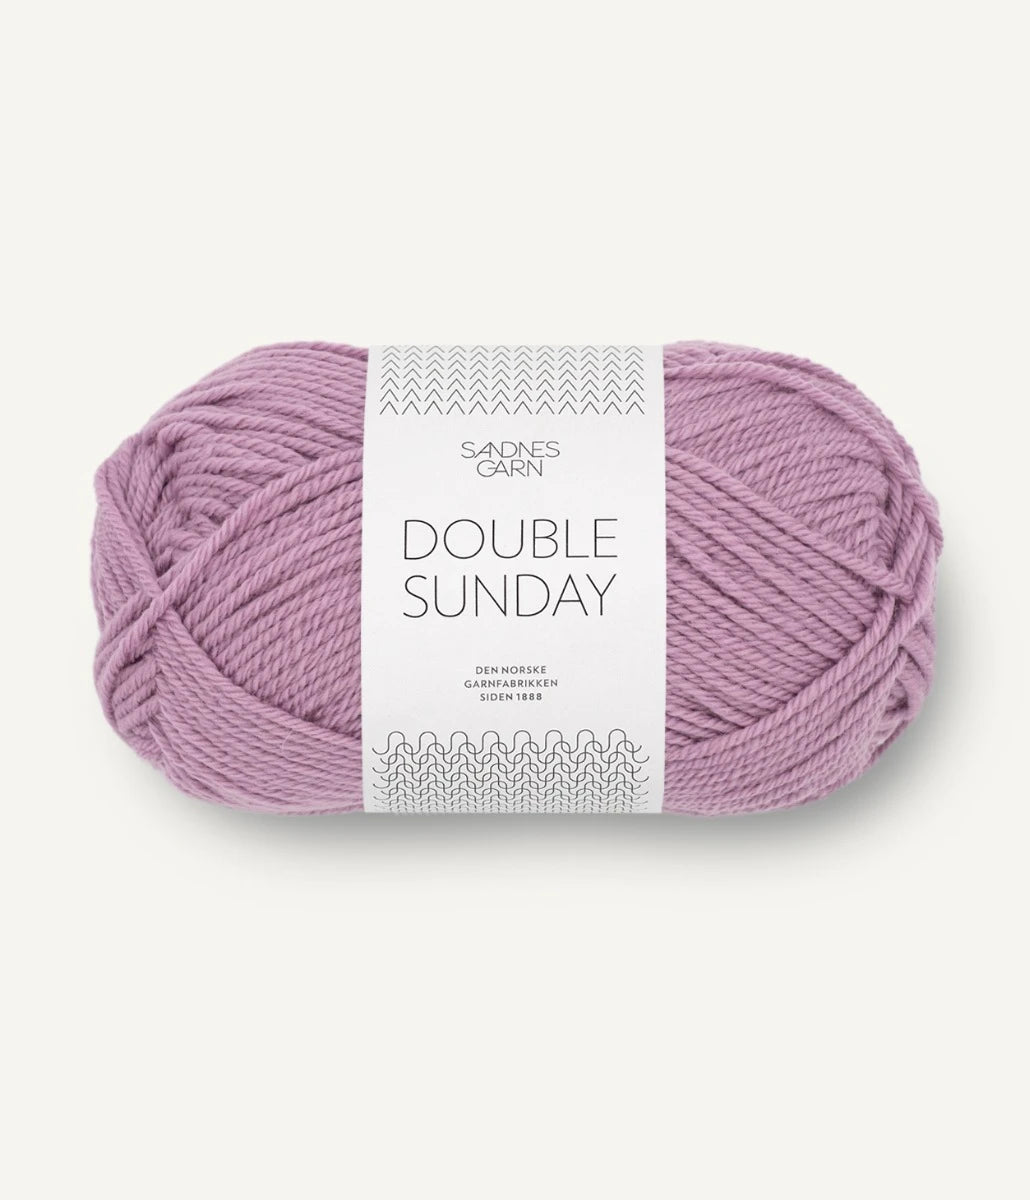 Kuvassa on Sandnes Garn Double Sunday -lanka (yarn) värissä Rosa Lavendel.